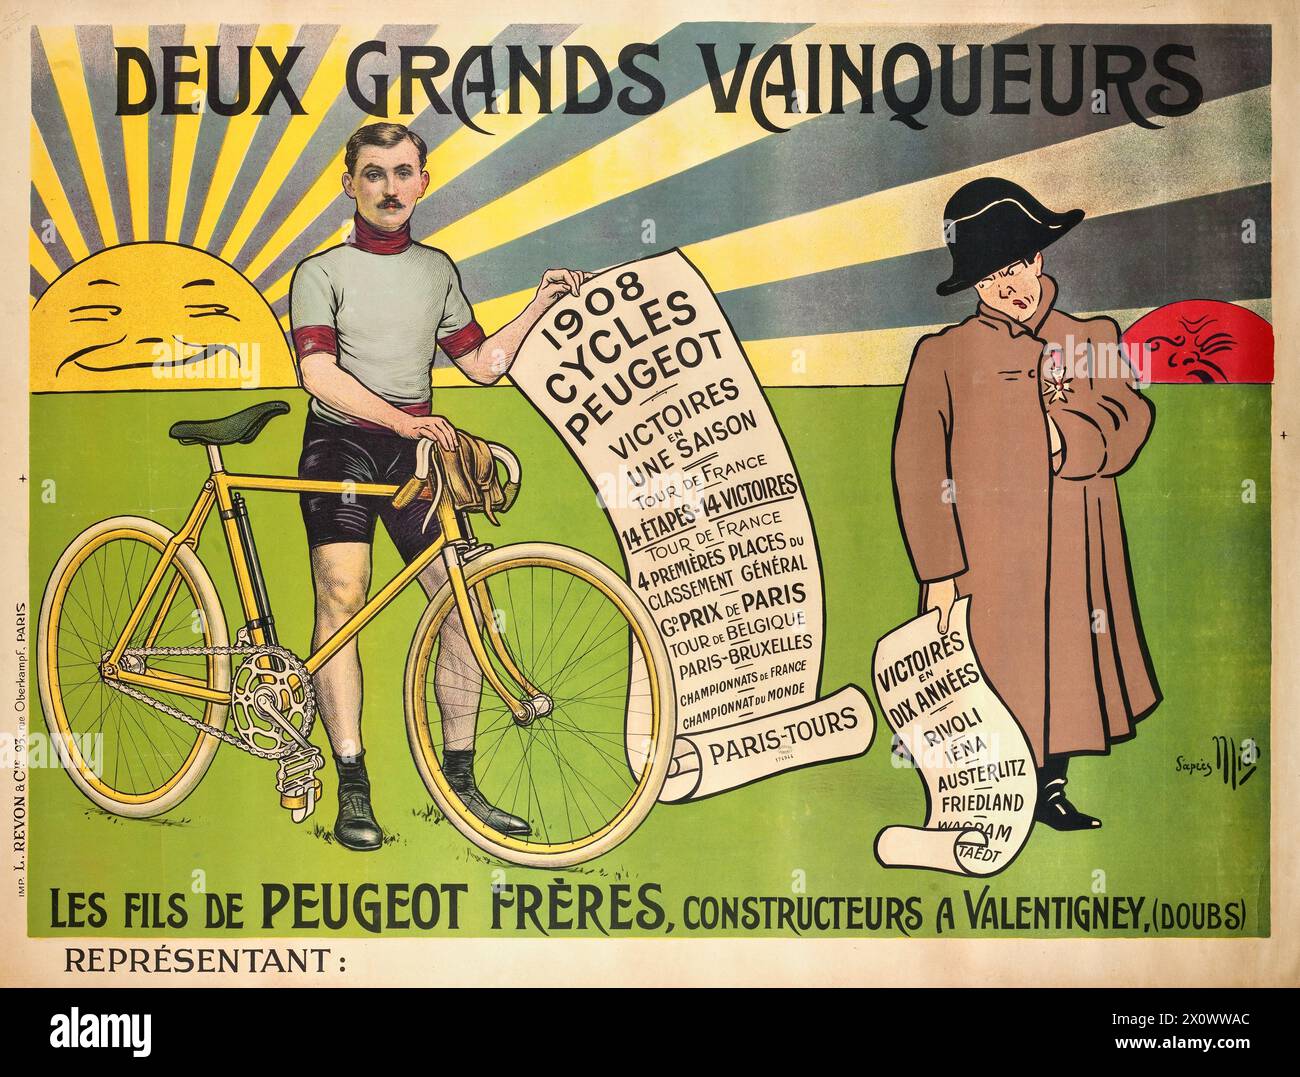 Französisches Vintage-Werbeplakat: Peugeot Freres Cycle. 1908. Illustration zweier großer Gewinner, die Rennen zeigen, die 1908 mit Peugeot-Fahrrädern gewonnen wurden, und Napoleons Siege. Stockfoto